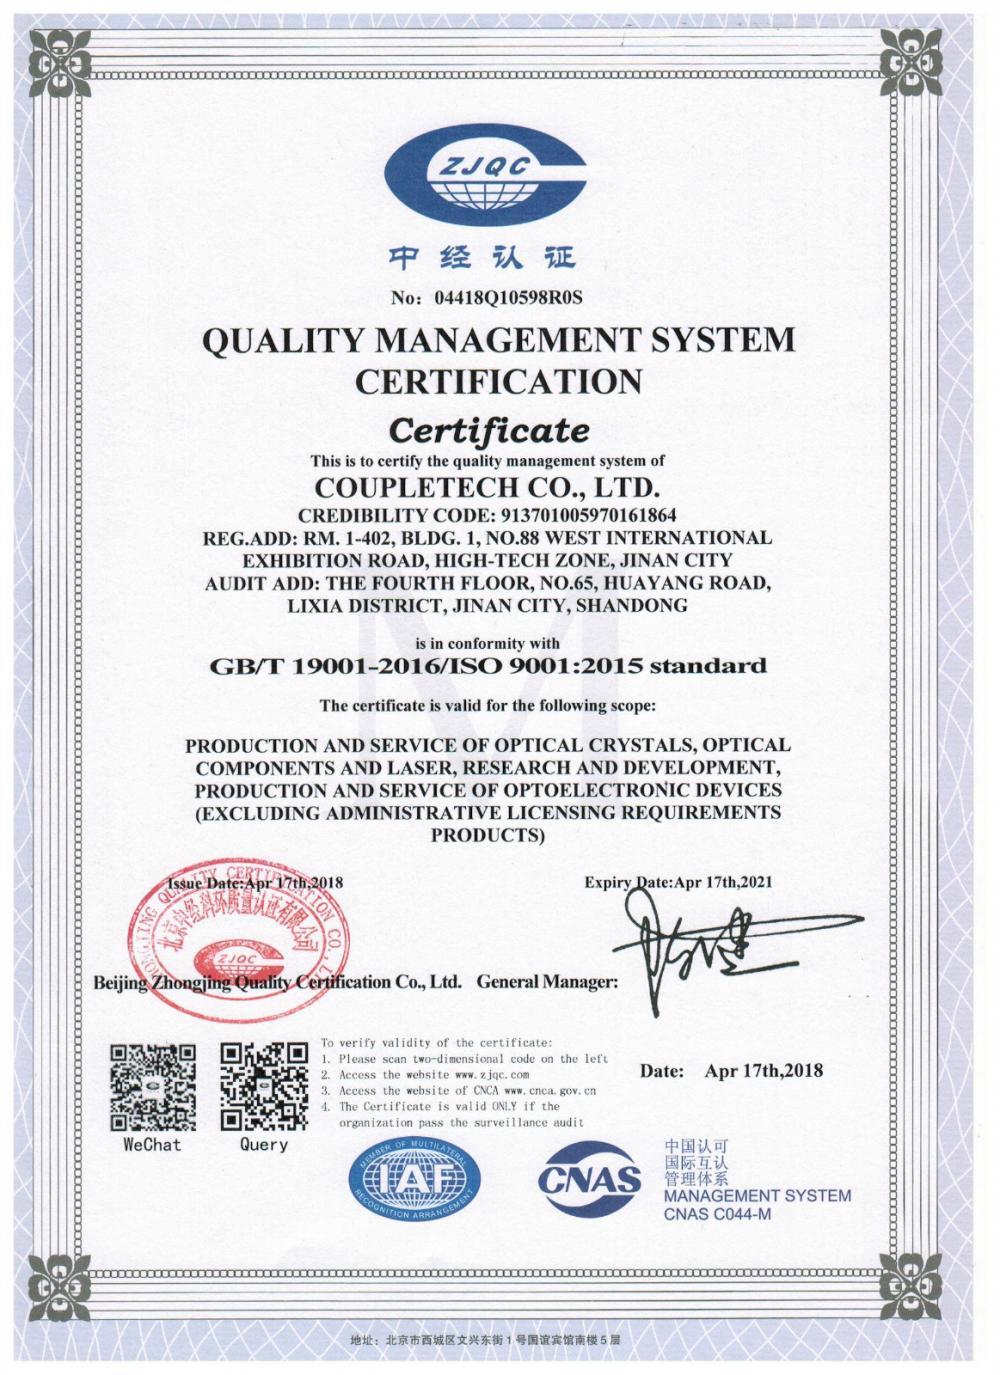 Coupletech Co., Ltd. har bestått sertifiseringen: En modulær brakett for aktive temperaturkontrollkrystaller.